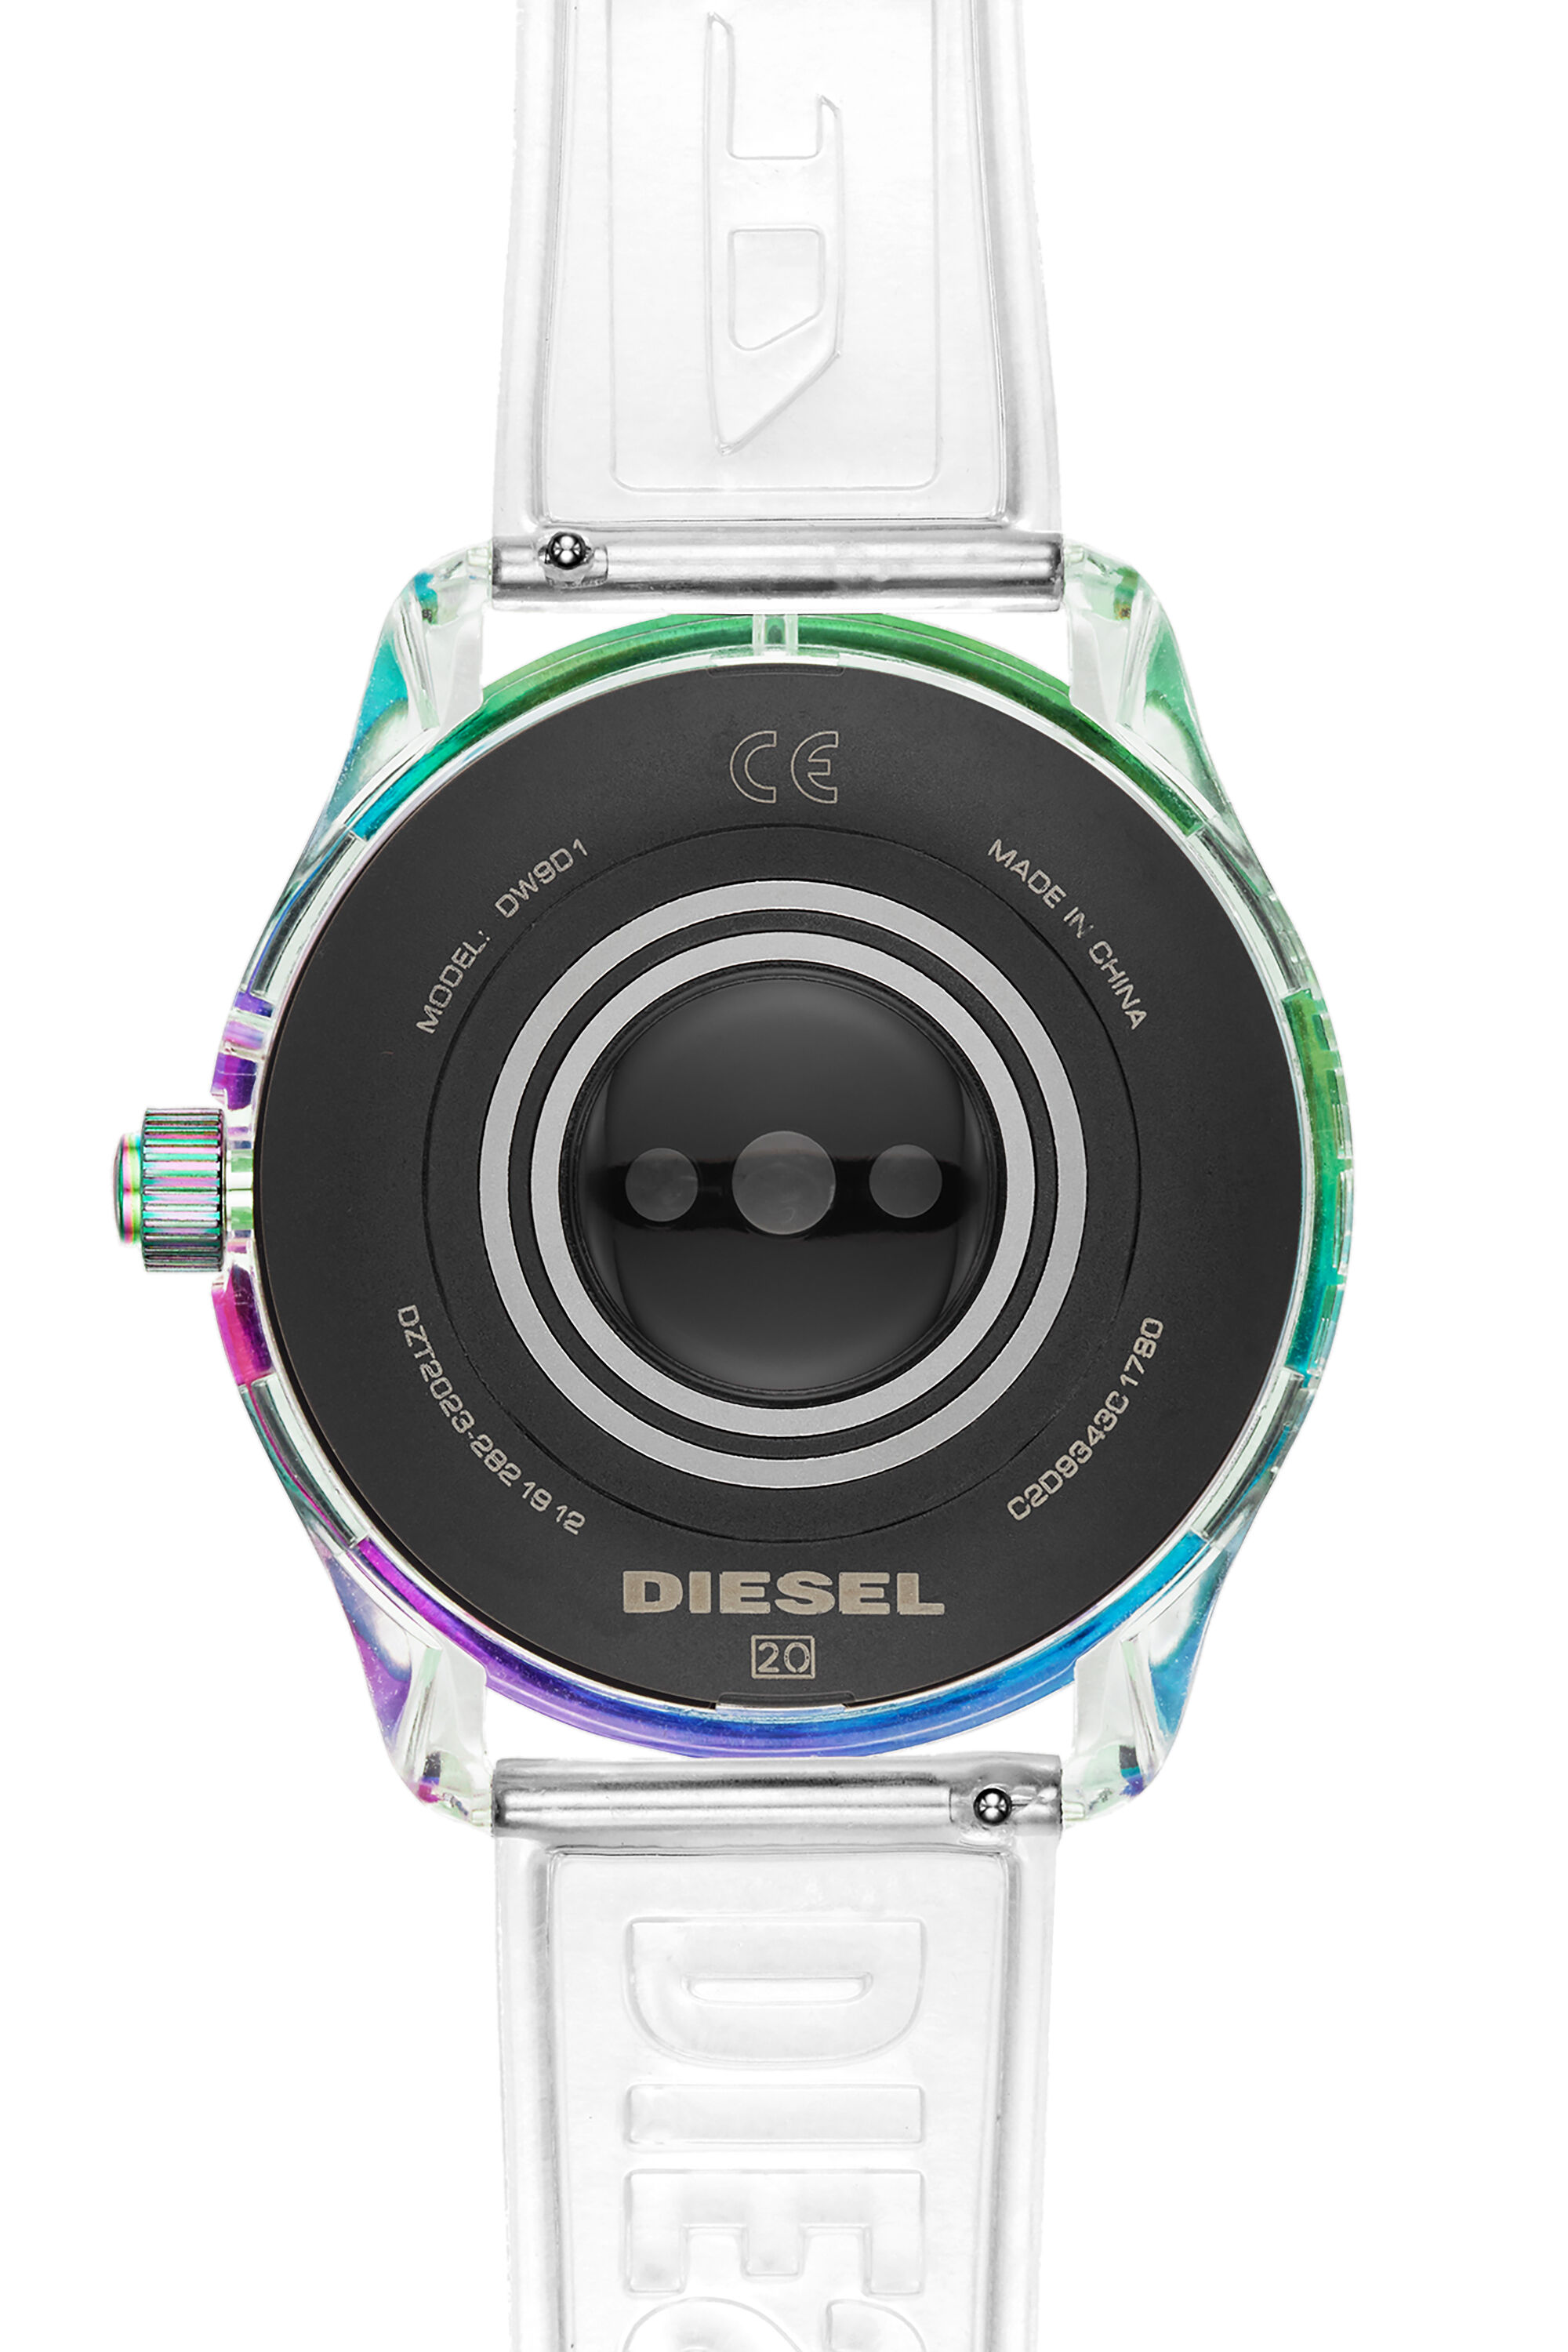 Diesel - DT2023, Blanc - Image 3